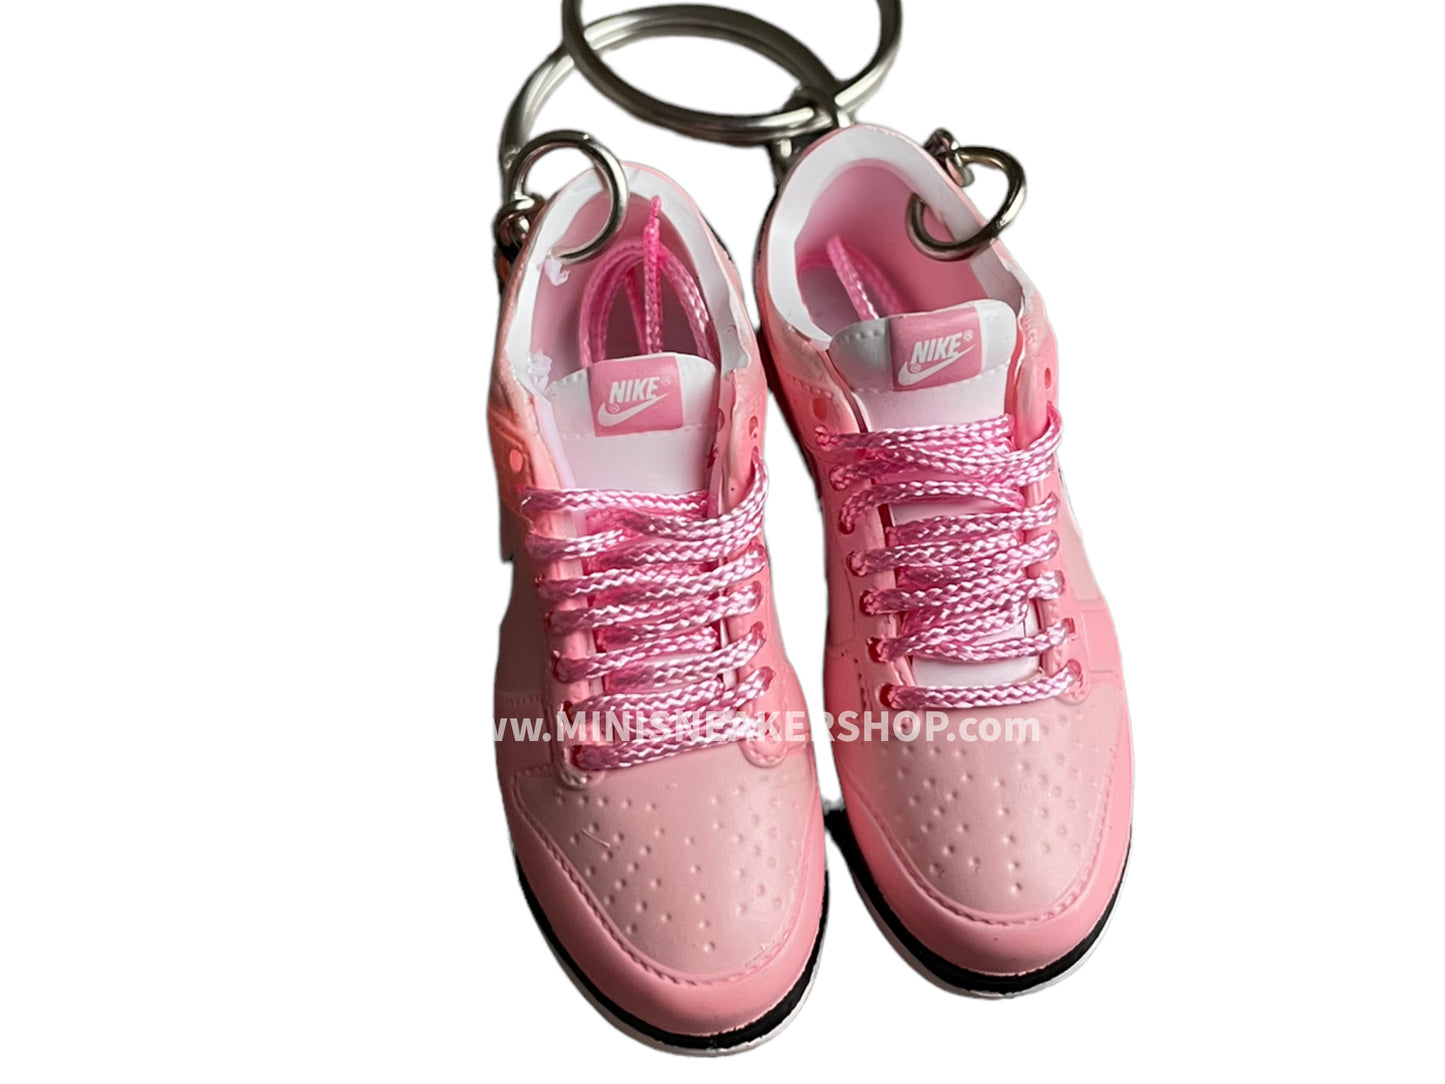 Mini sneaker keychain 3D Dunk - Pink shades